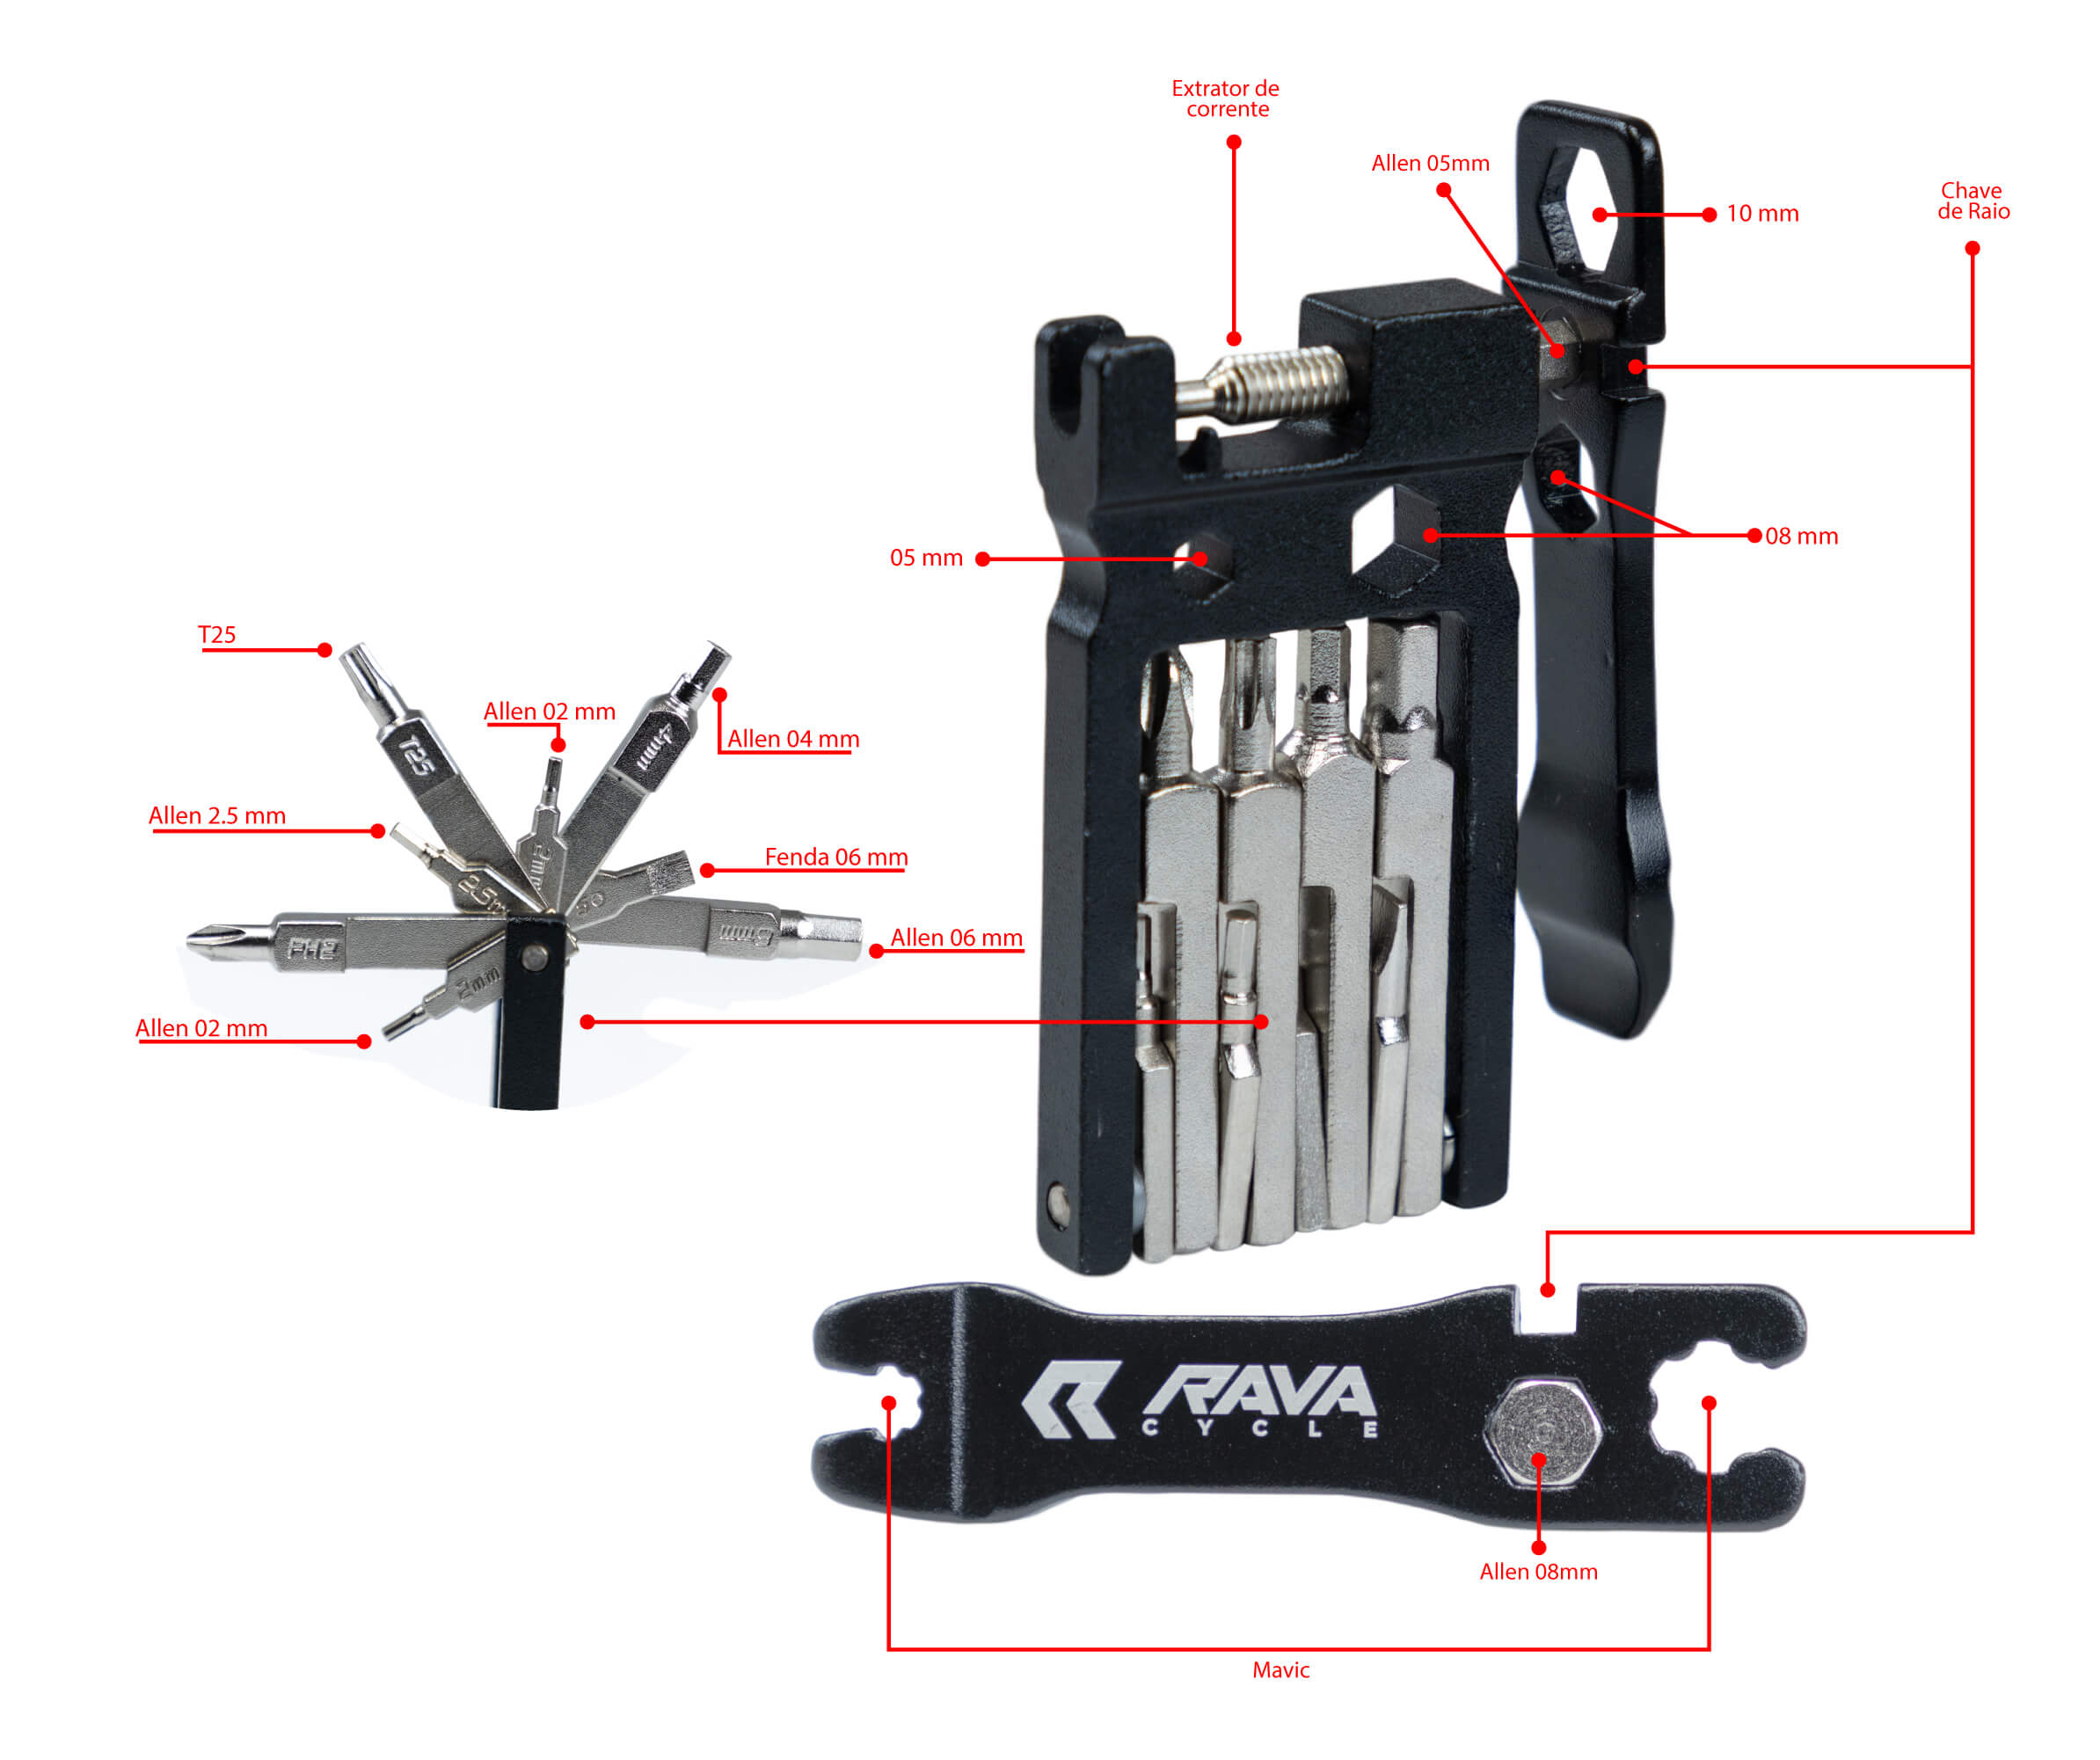 RAVA Smart Tools Pocket | Kit chaveiro 20 funções